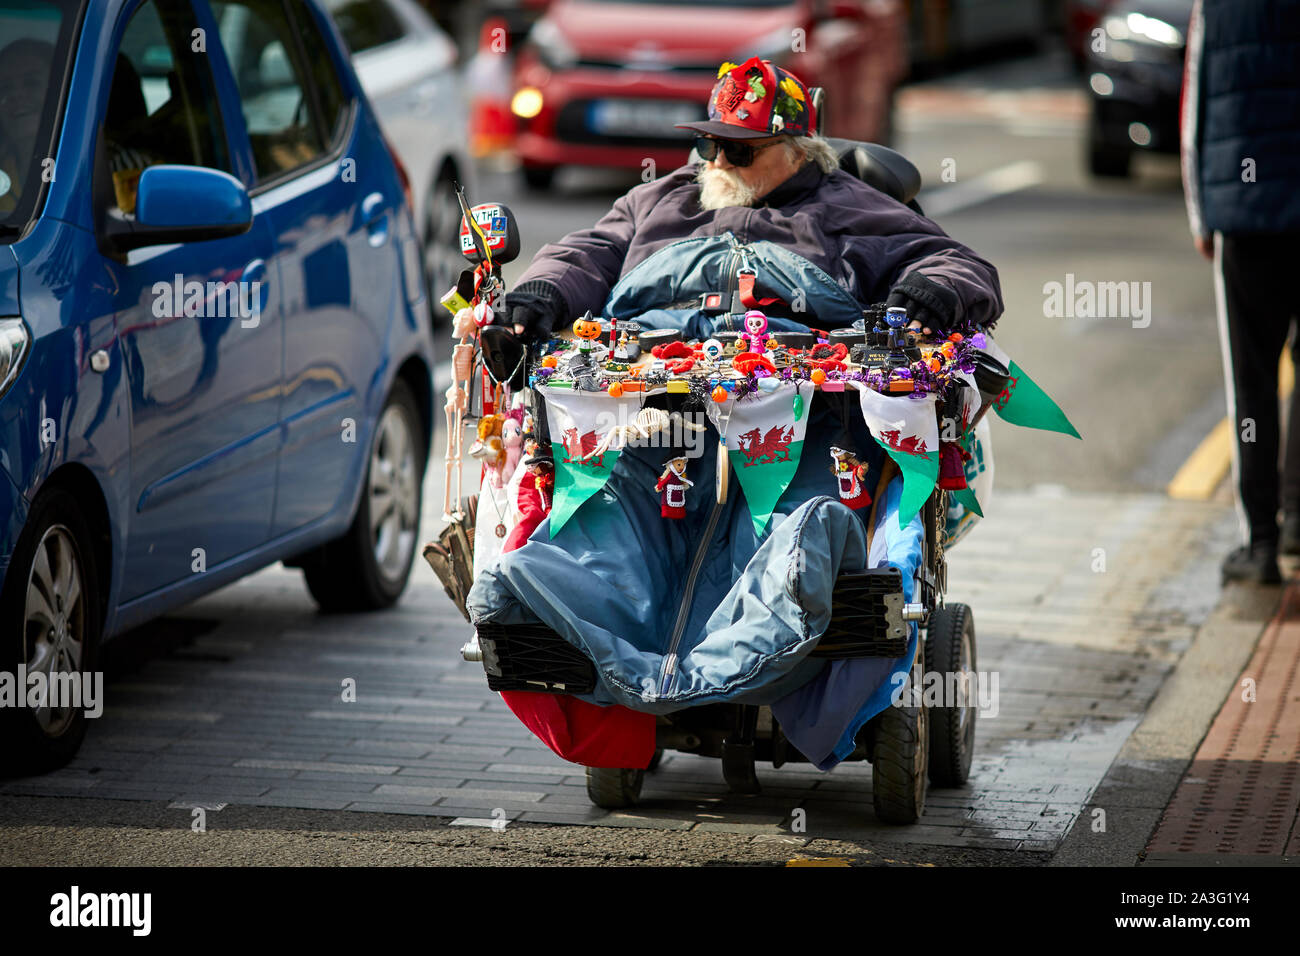 Cardiff Wales, l uomo nella mobilità scooter vendita di regali per i turisti Foto Stock